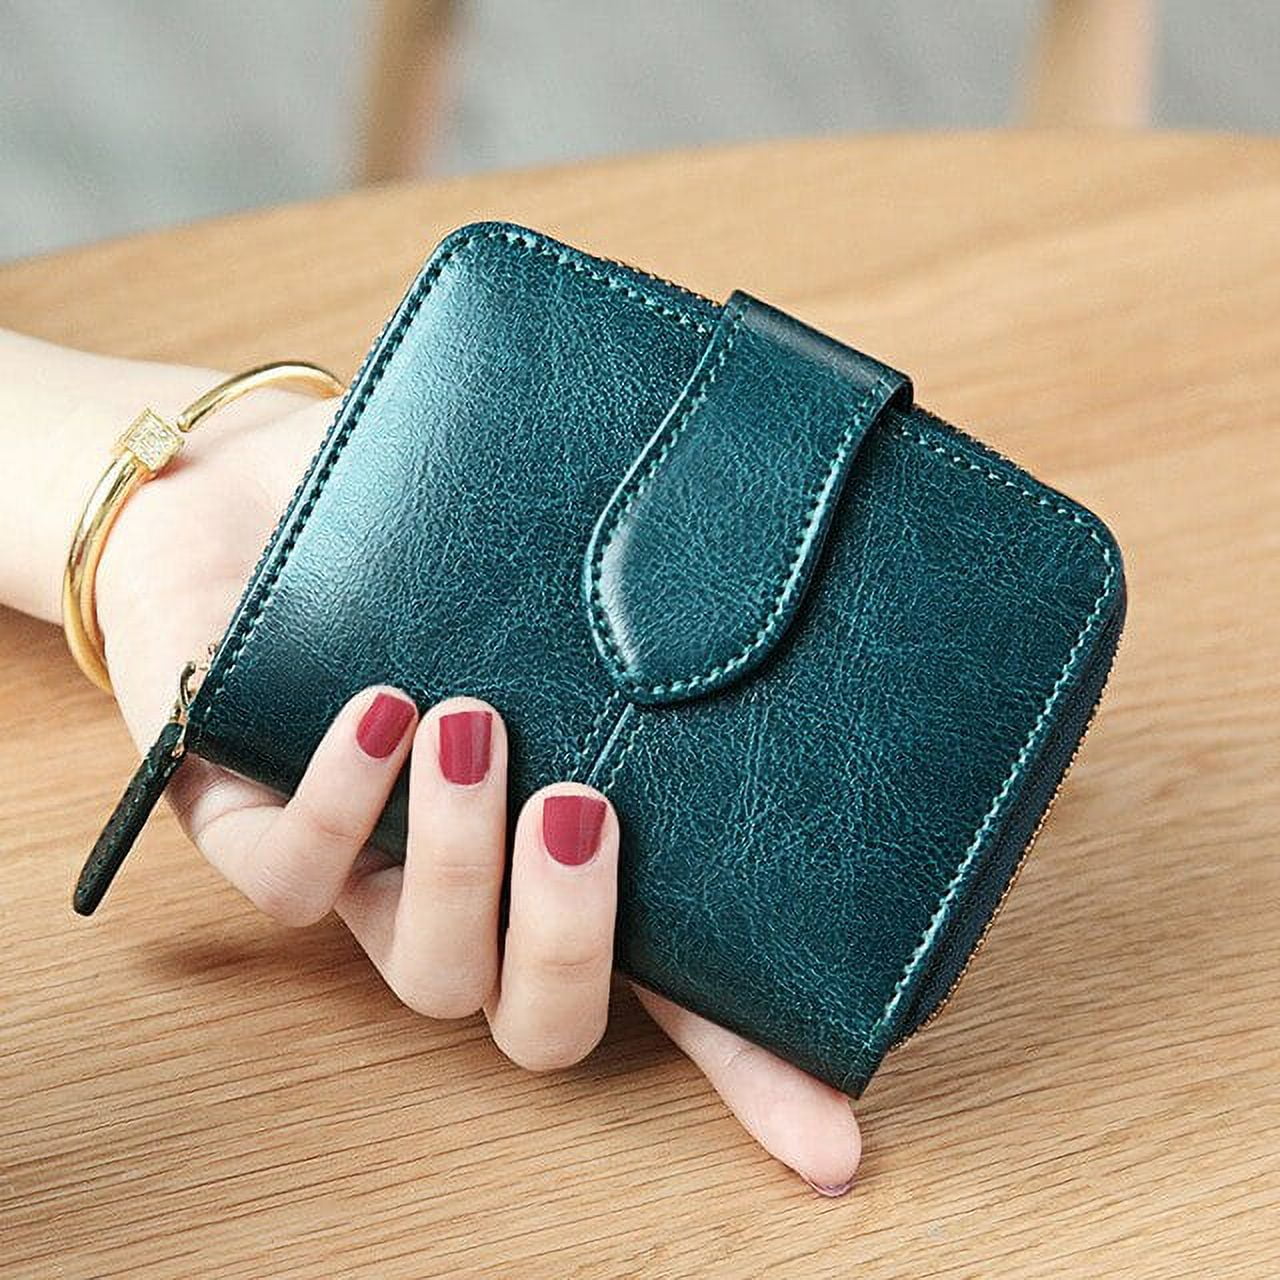 Fancy items wallets,purses handbags,ladies purse| Alibaba.com